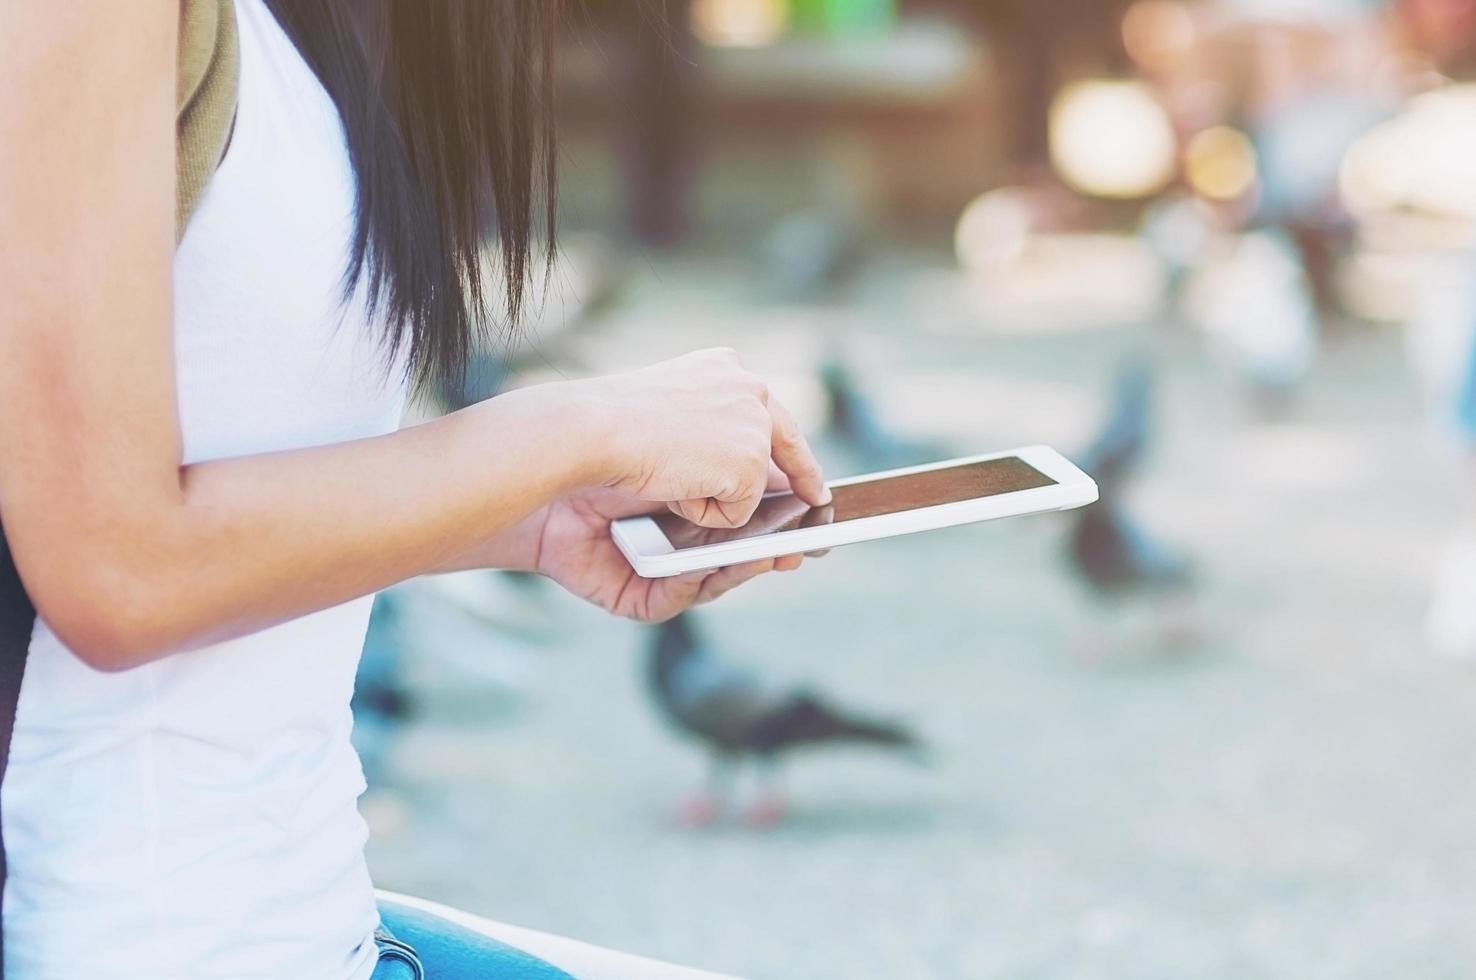 jonge vrouw rugzak reiziger met behulp van tablet in de stad - outdoor aziatische reiziger activiteit concept foto